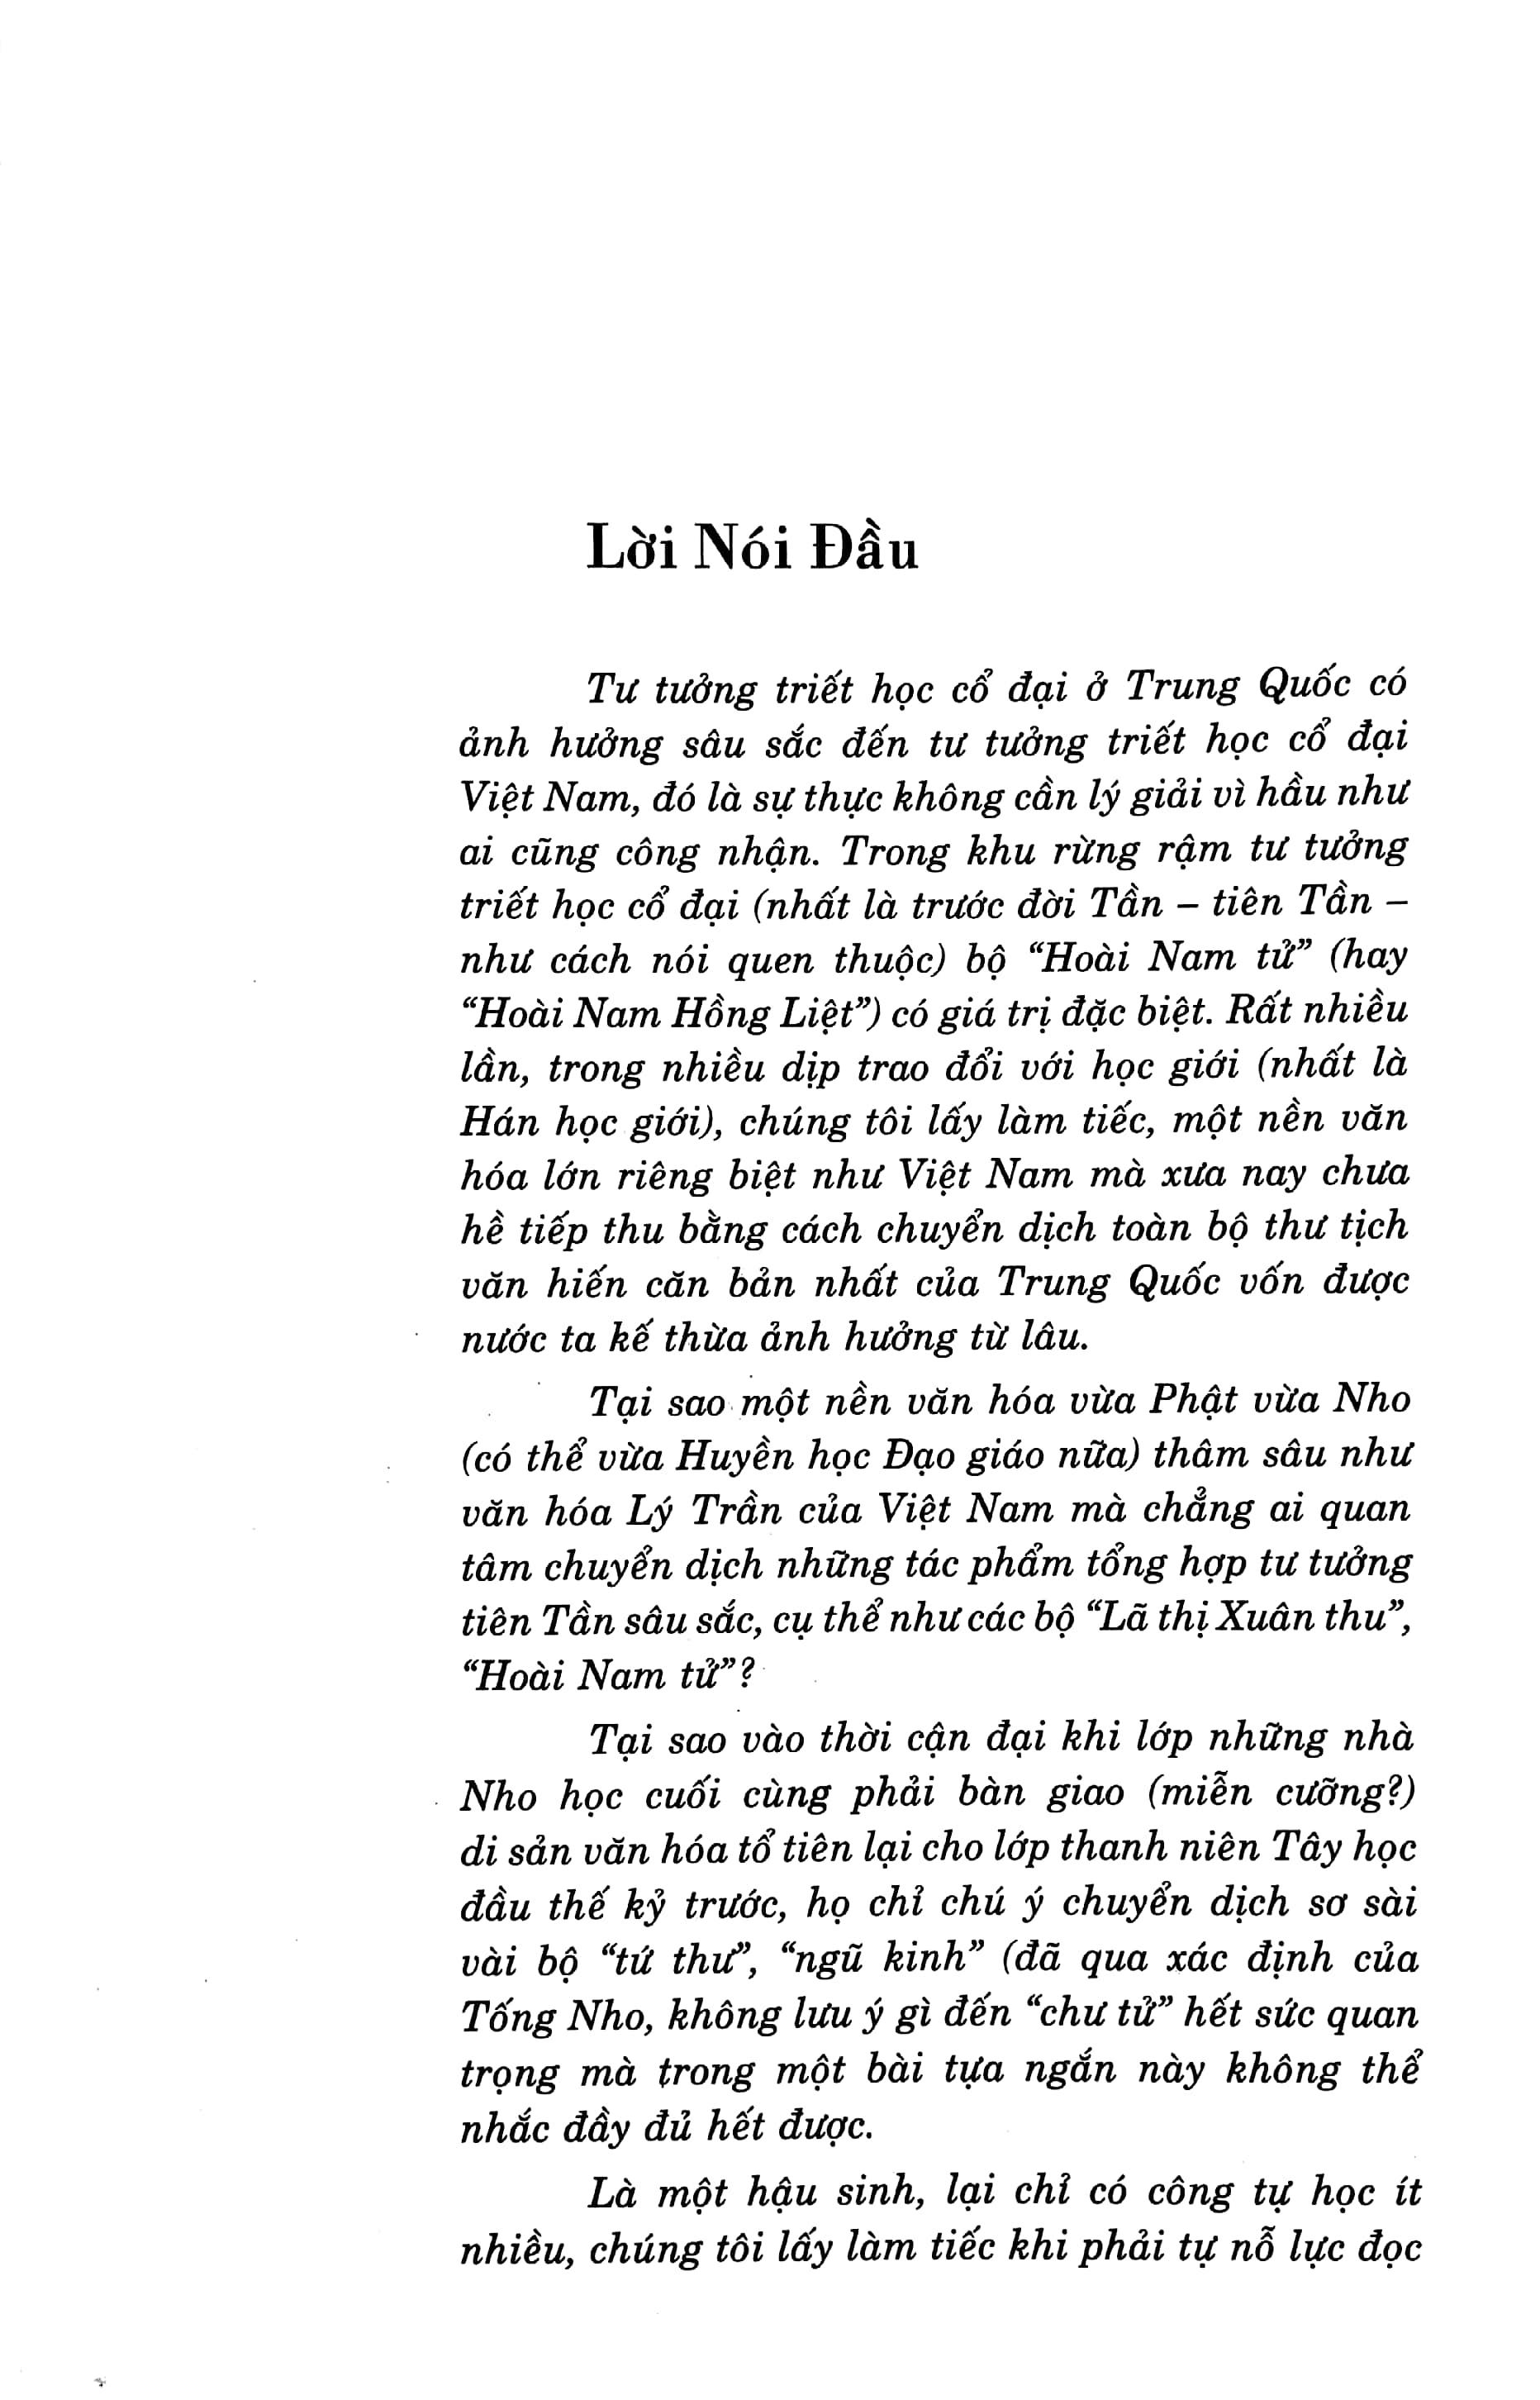 Bộ Sách Hoài Nam Tử - Cuộc Đời Tư Tưởng Và Toàn Văn Hoàng Nam Hồng Liệt (Bộ 2 Cuốn)